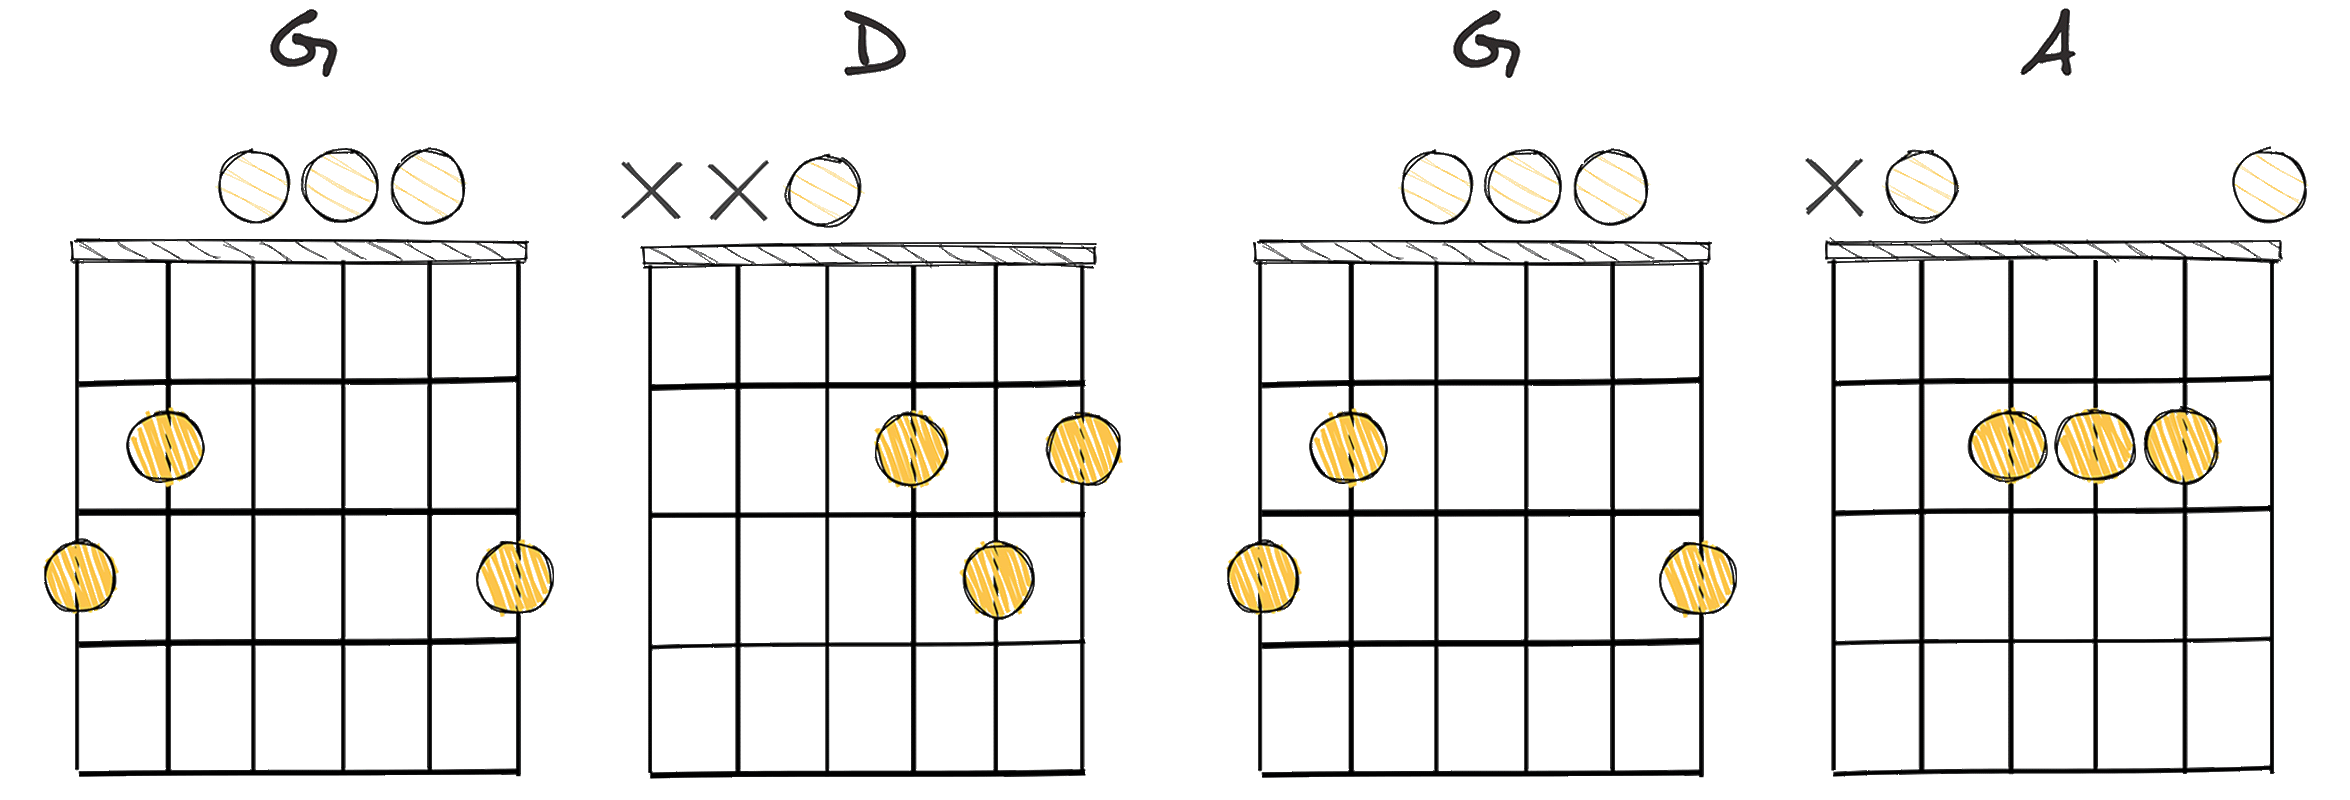 IV-I-IV-V (4-1-4-5) chords diagram